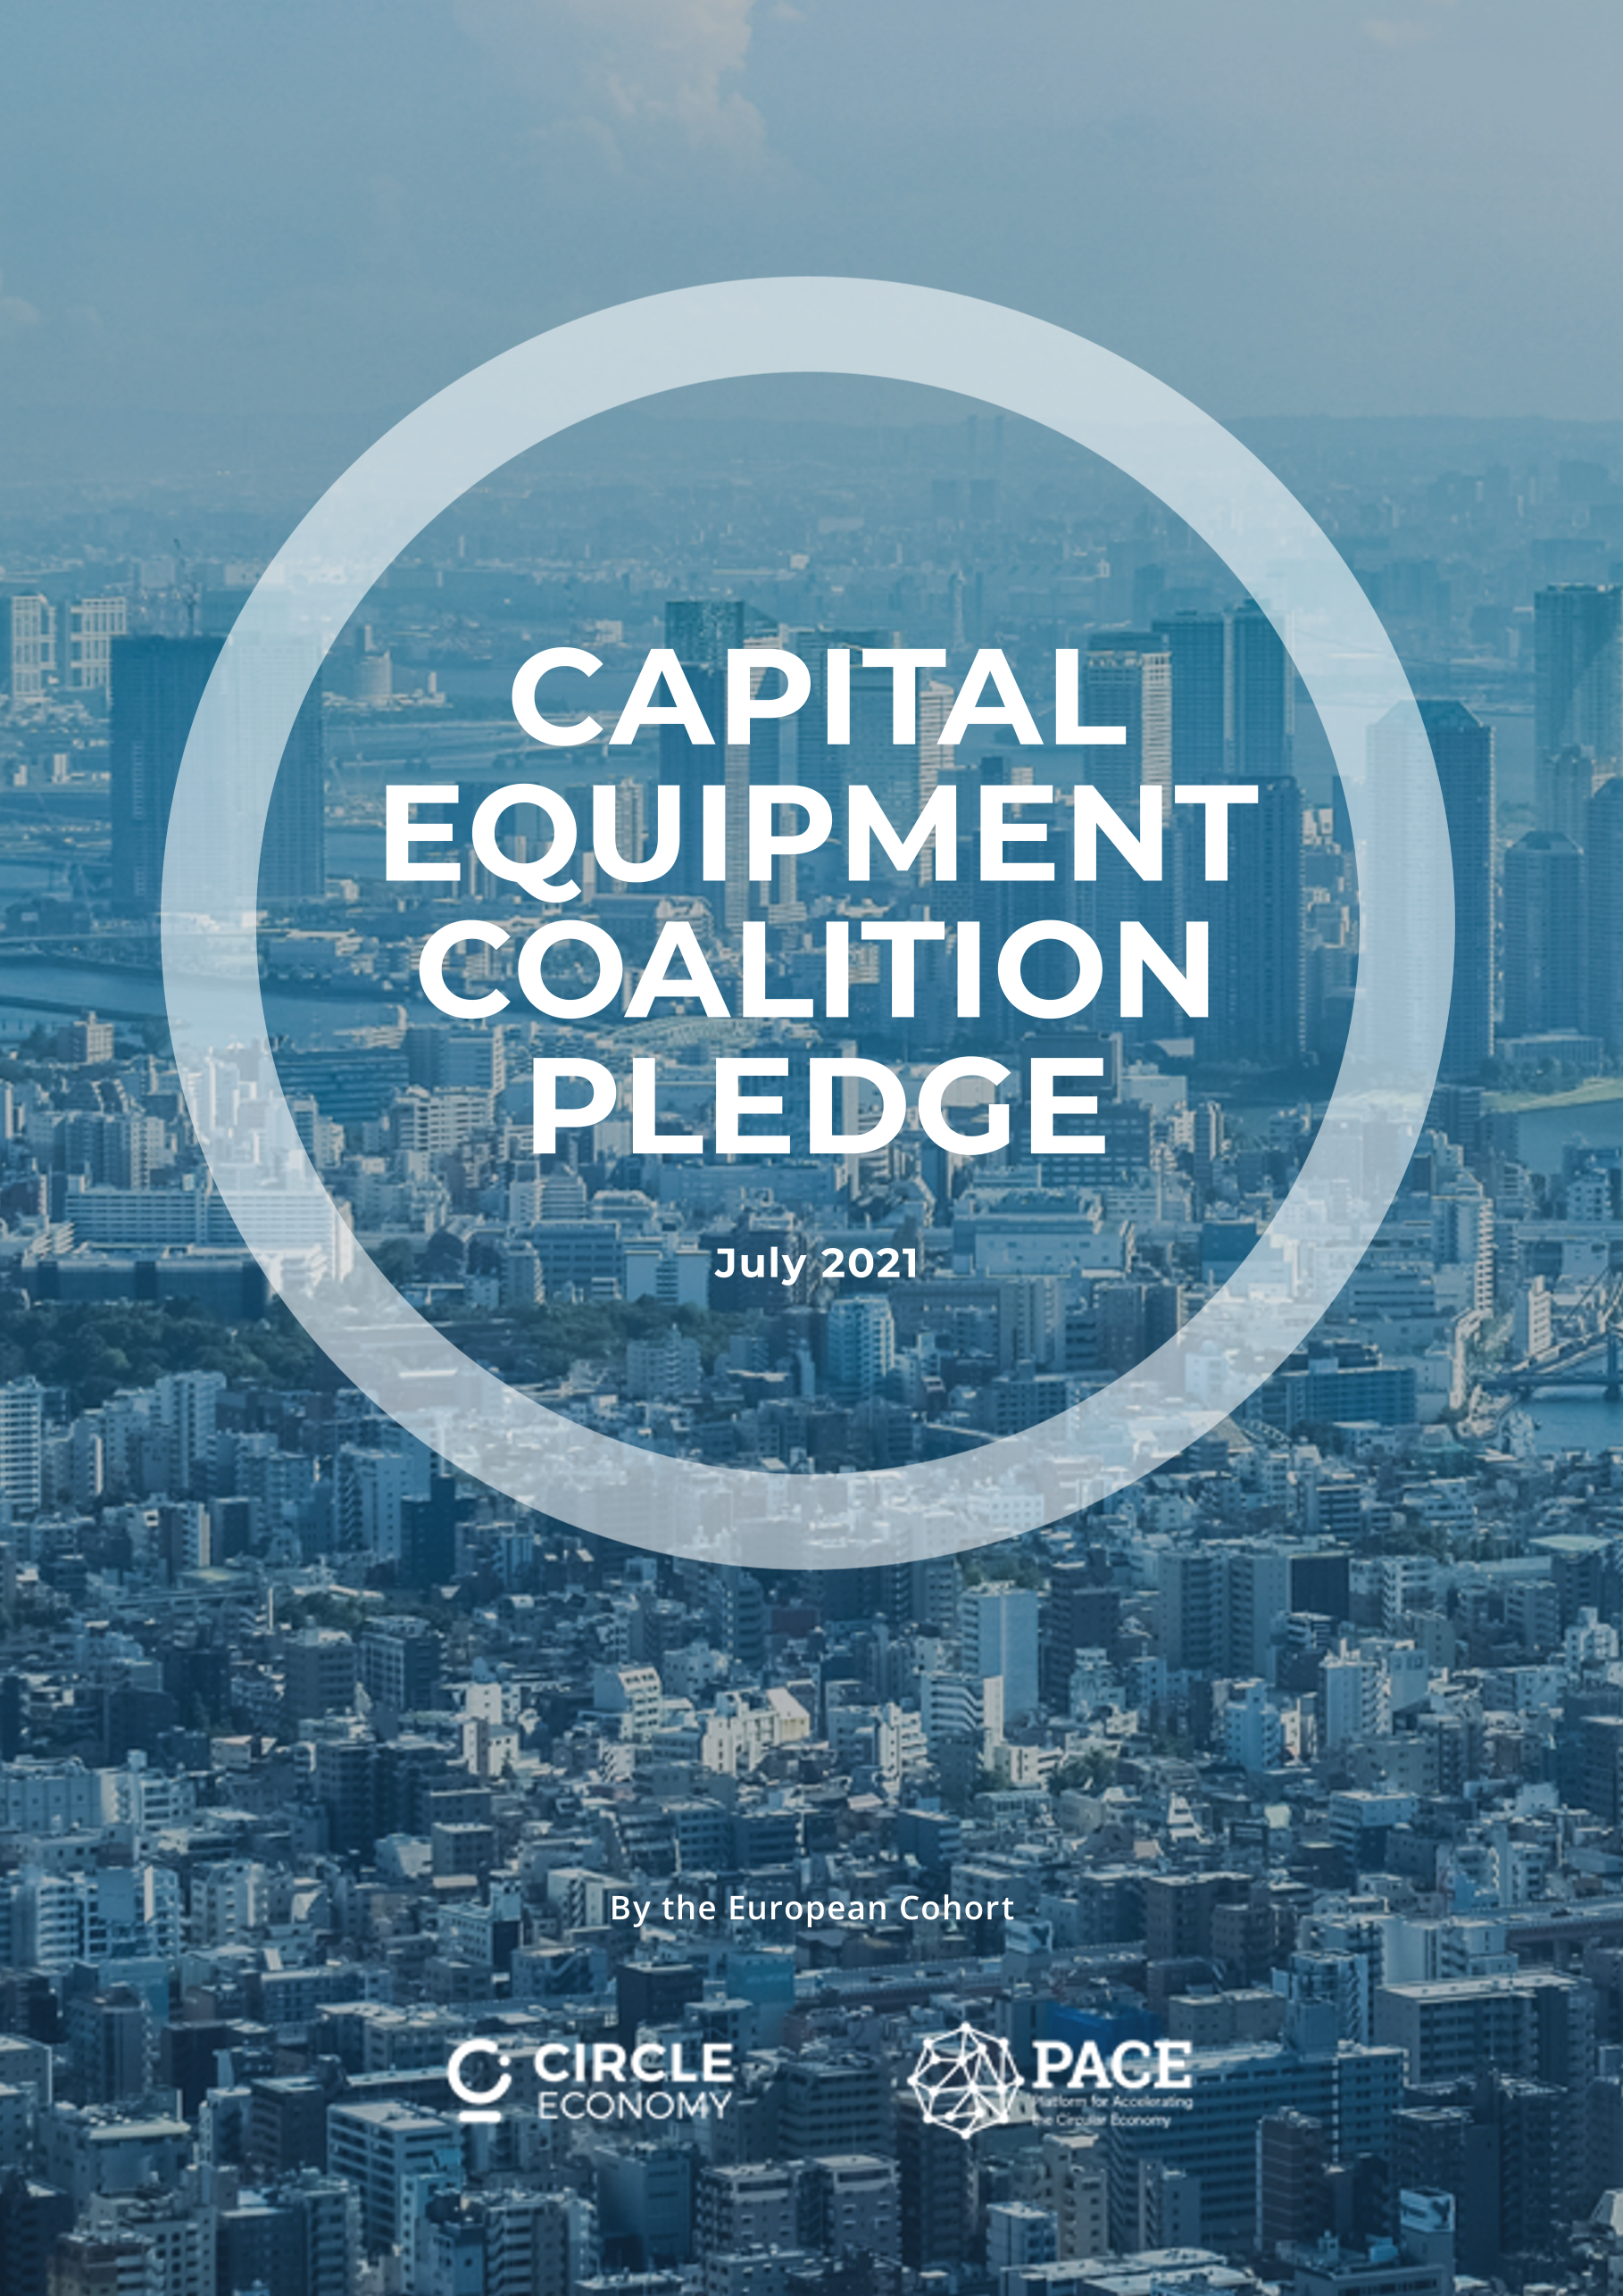  Capital Equipment Coalition Pledge - July 2021